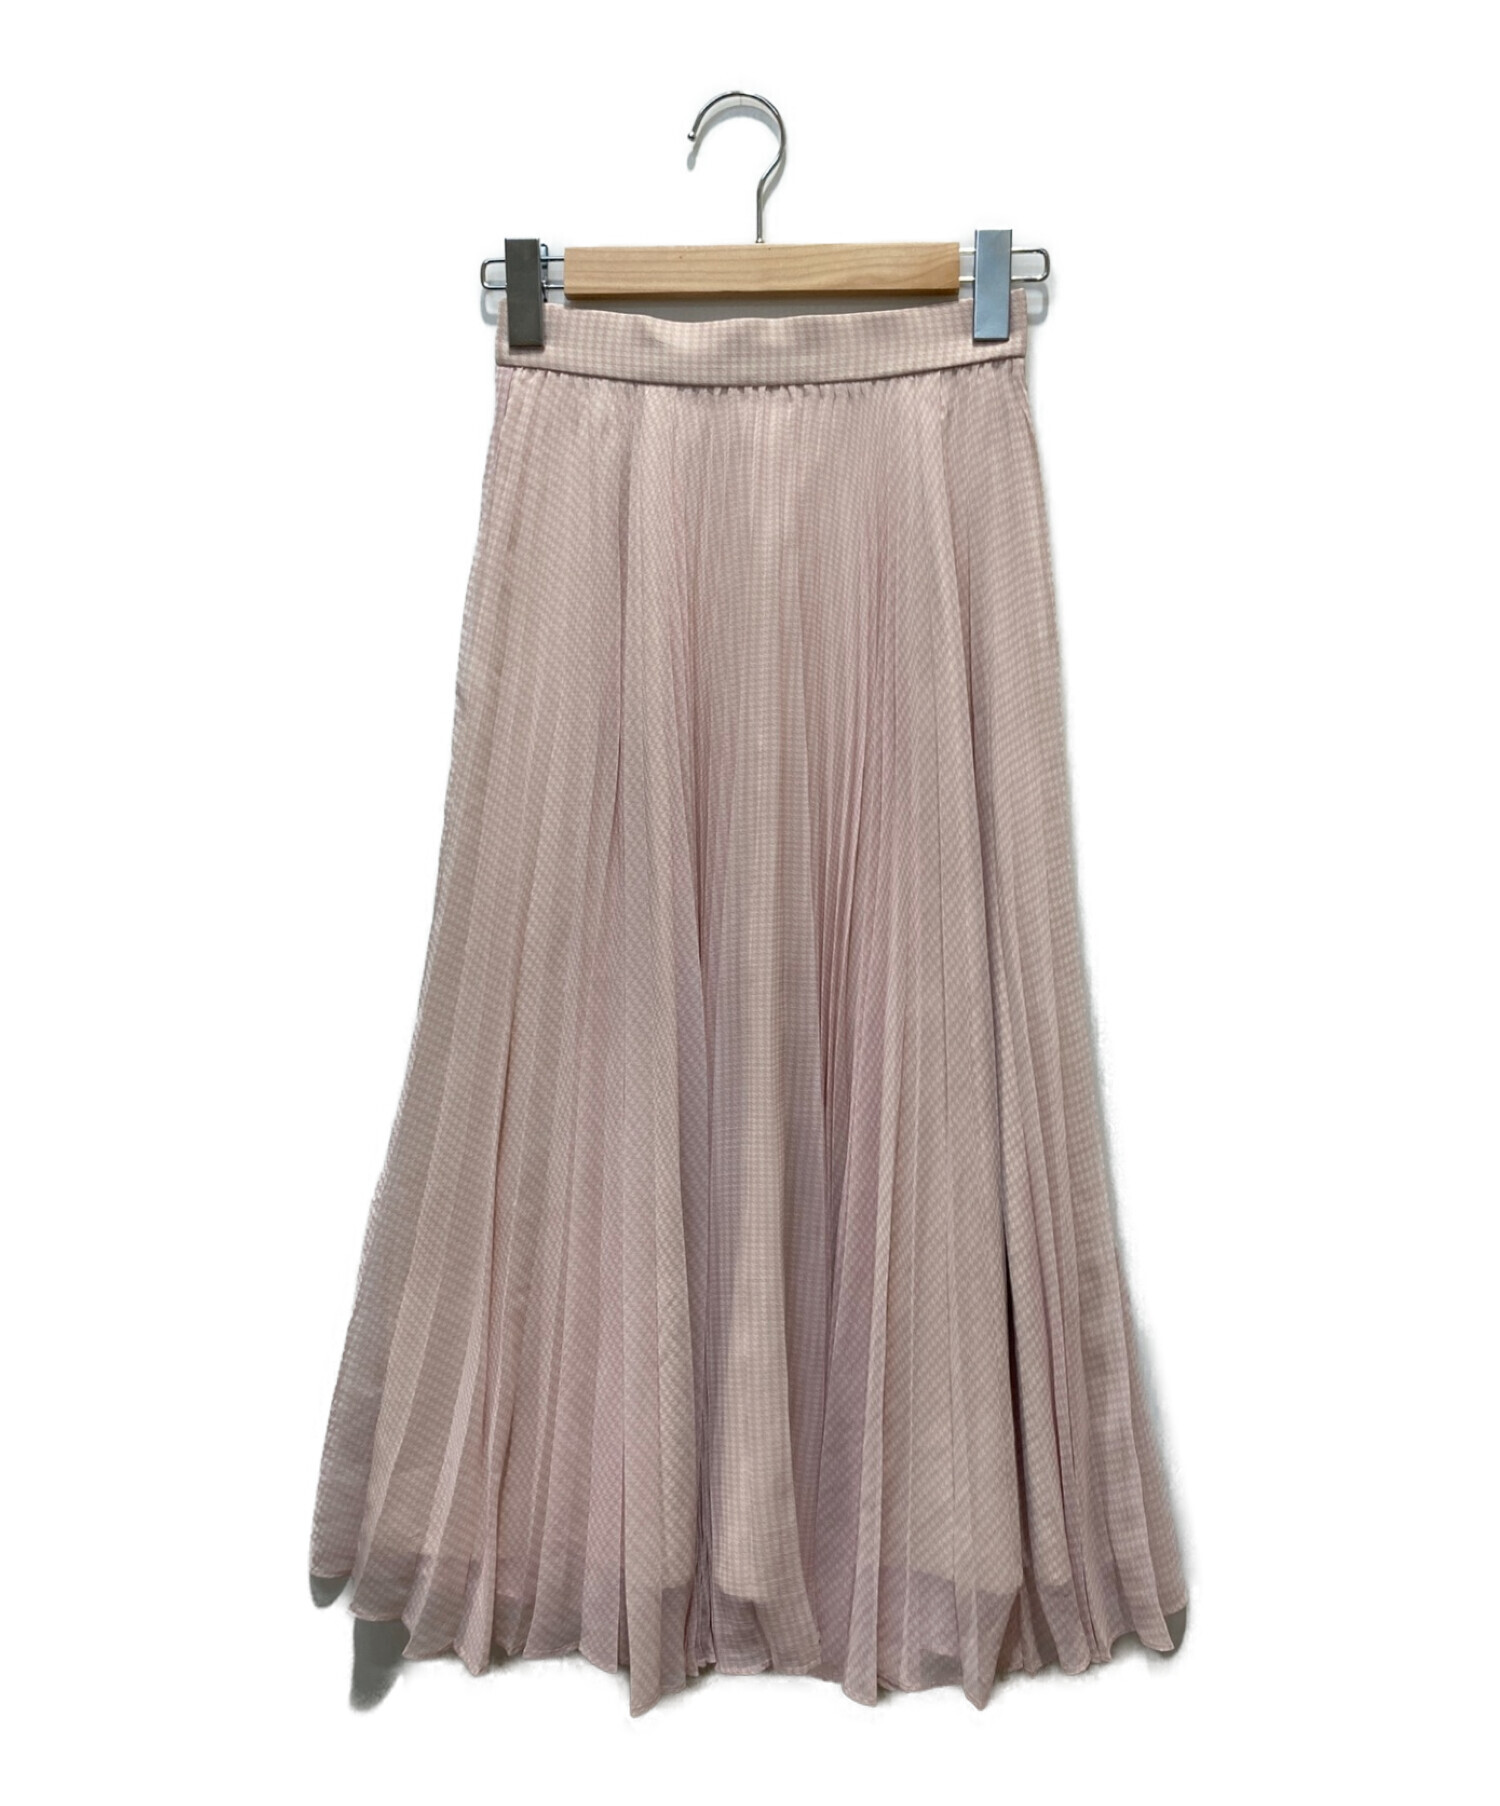 CELFORD (セルフォード) プリントプリーツスカート ピンク サイズ:36